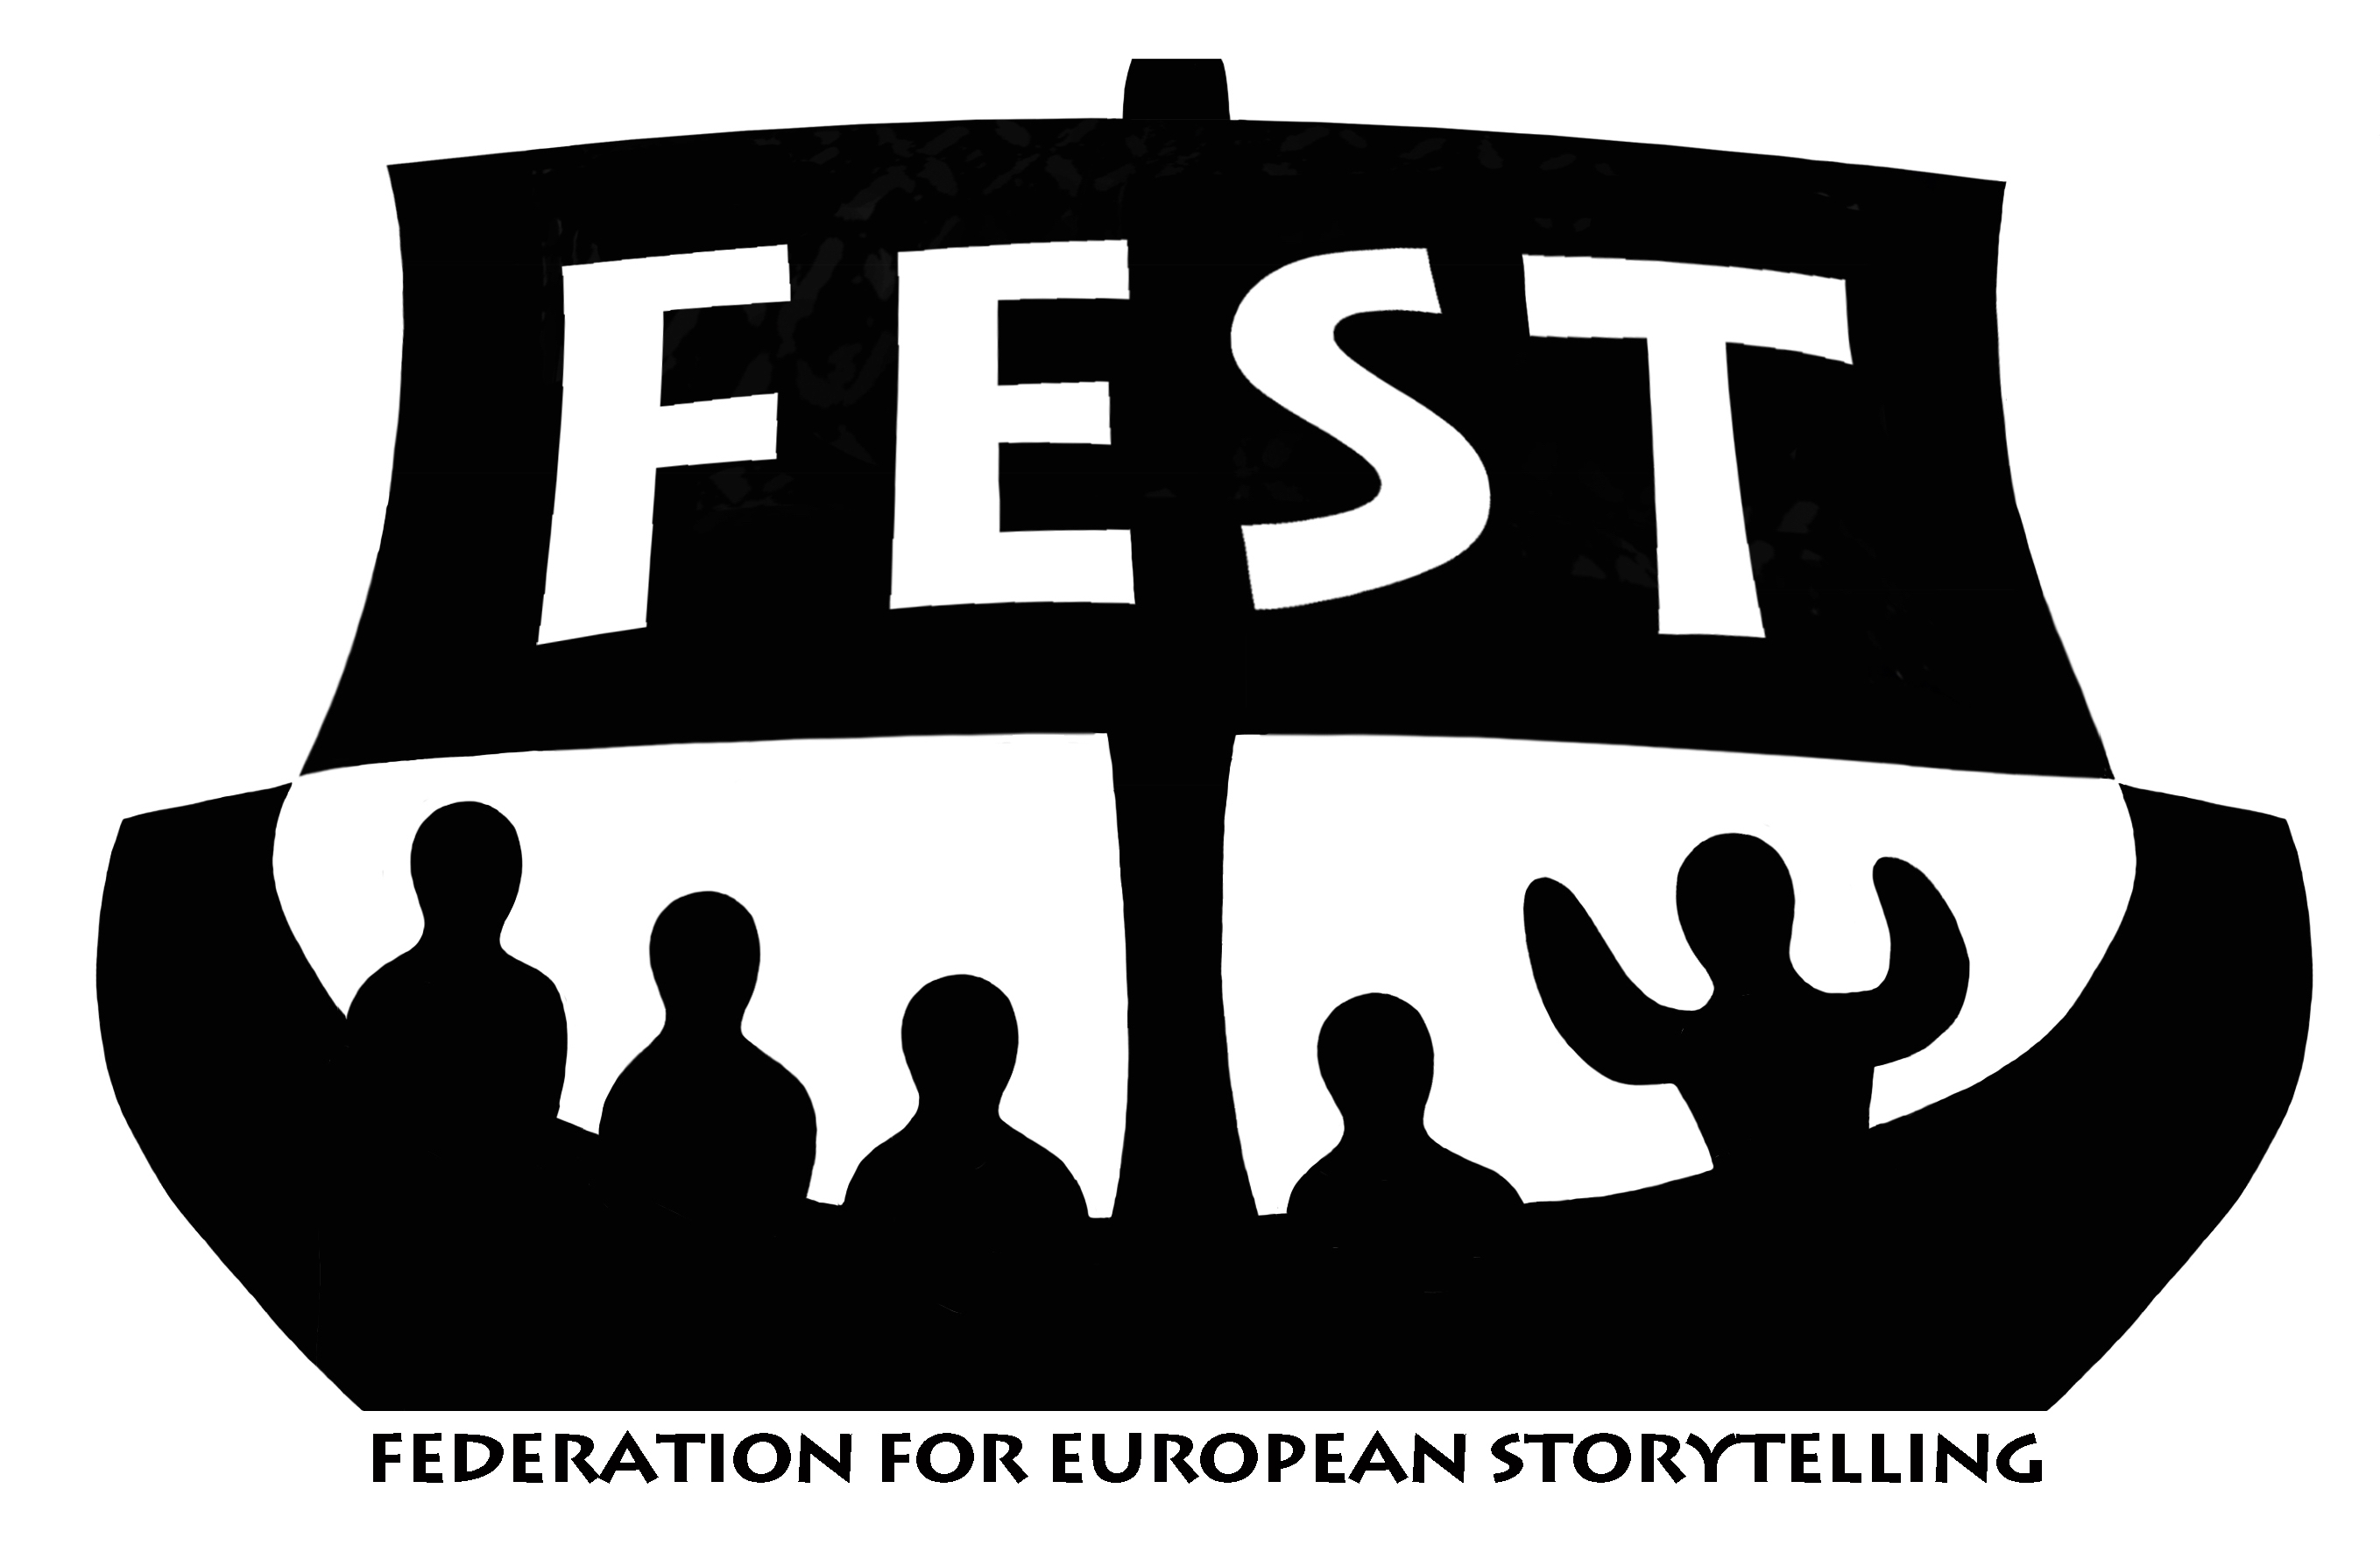 Federation for European Storytelling, FEST